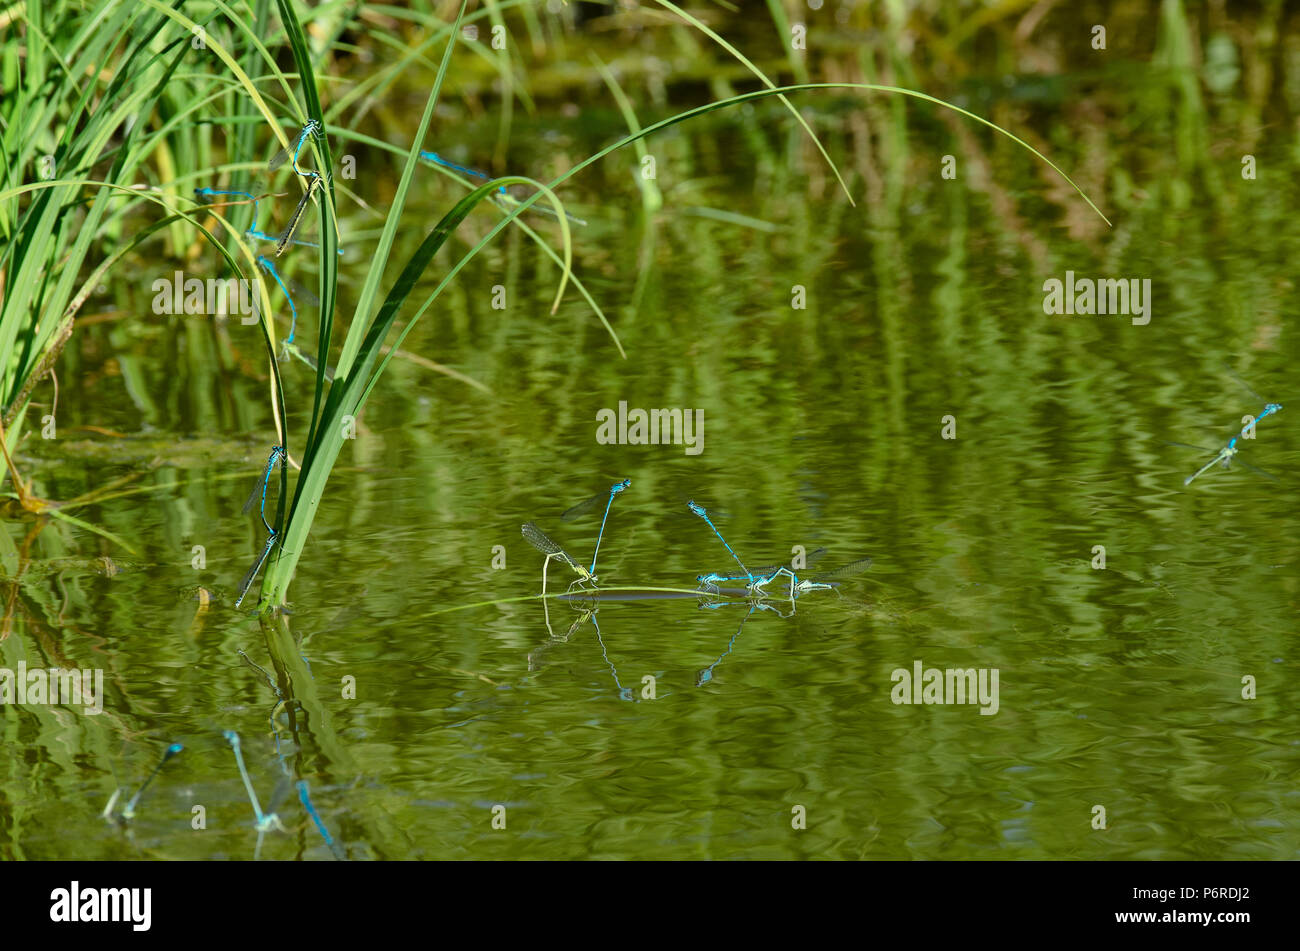 Stagione di riproduzione delle specie di libellule damselfly blu sulla superficie dello stagno con vegetazione verde Foto Stock